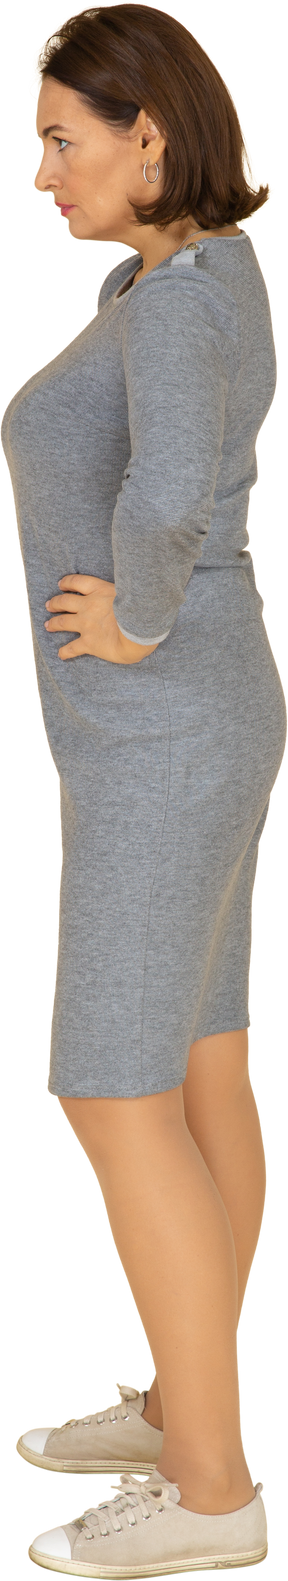 Vista lateral de uma mulher com vestido cinza em pé com as mãos na cintura